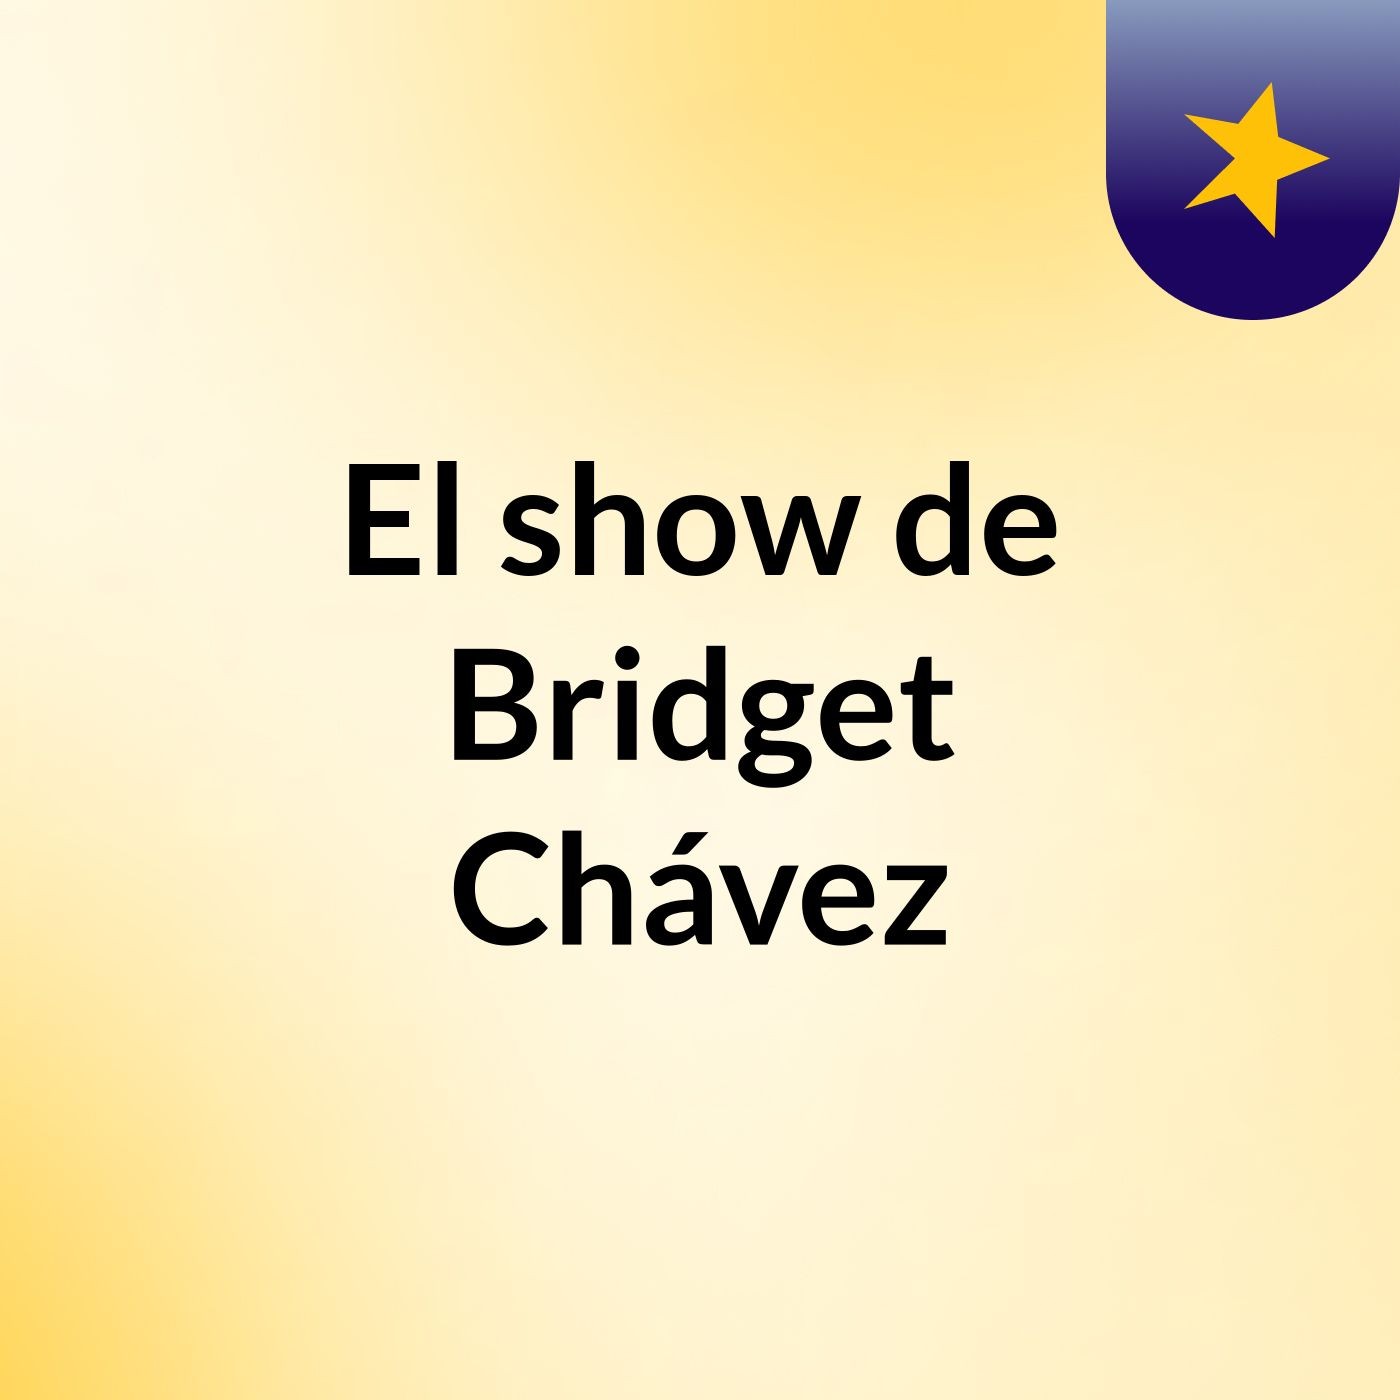 Episodio 6 - El show de Bridget Chávez